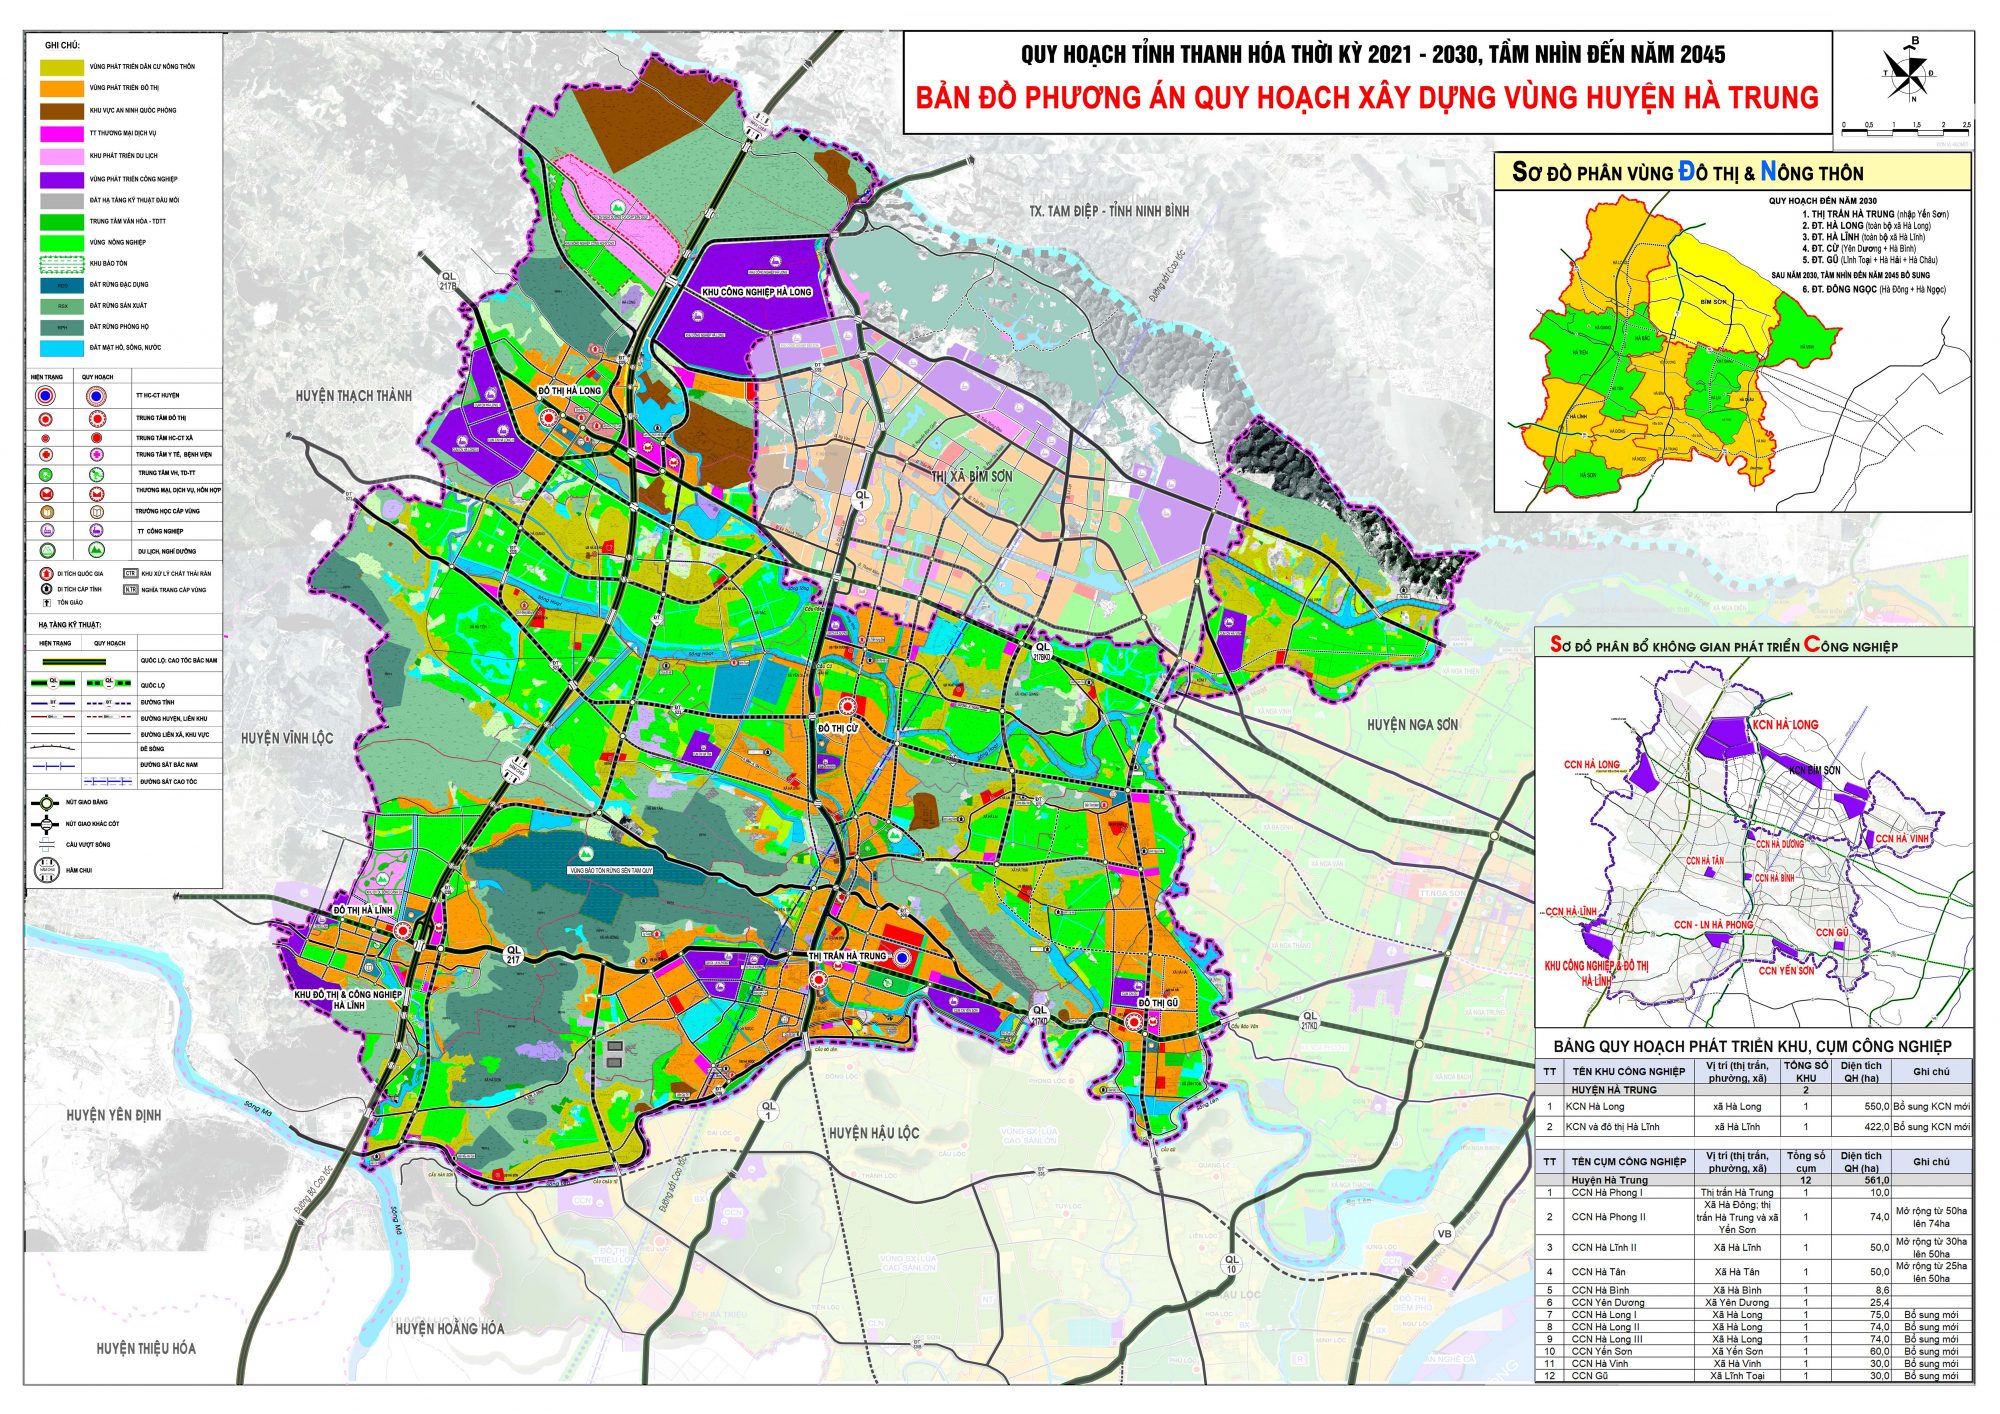 Bản đồ quy hoạch huyện Hà Trung, tỉnh Thanh Hóa đến năm 2030